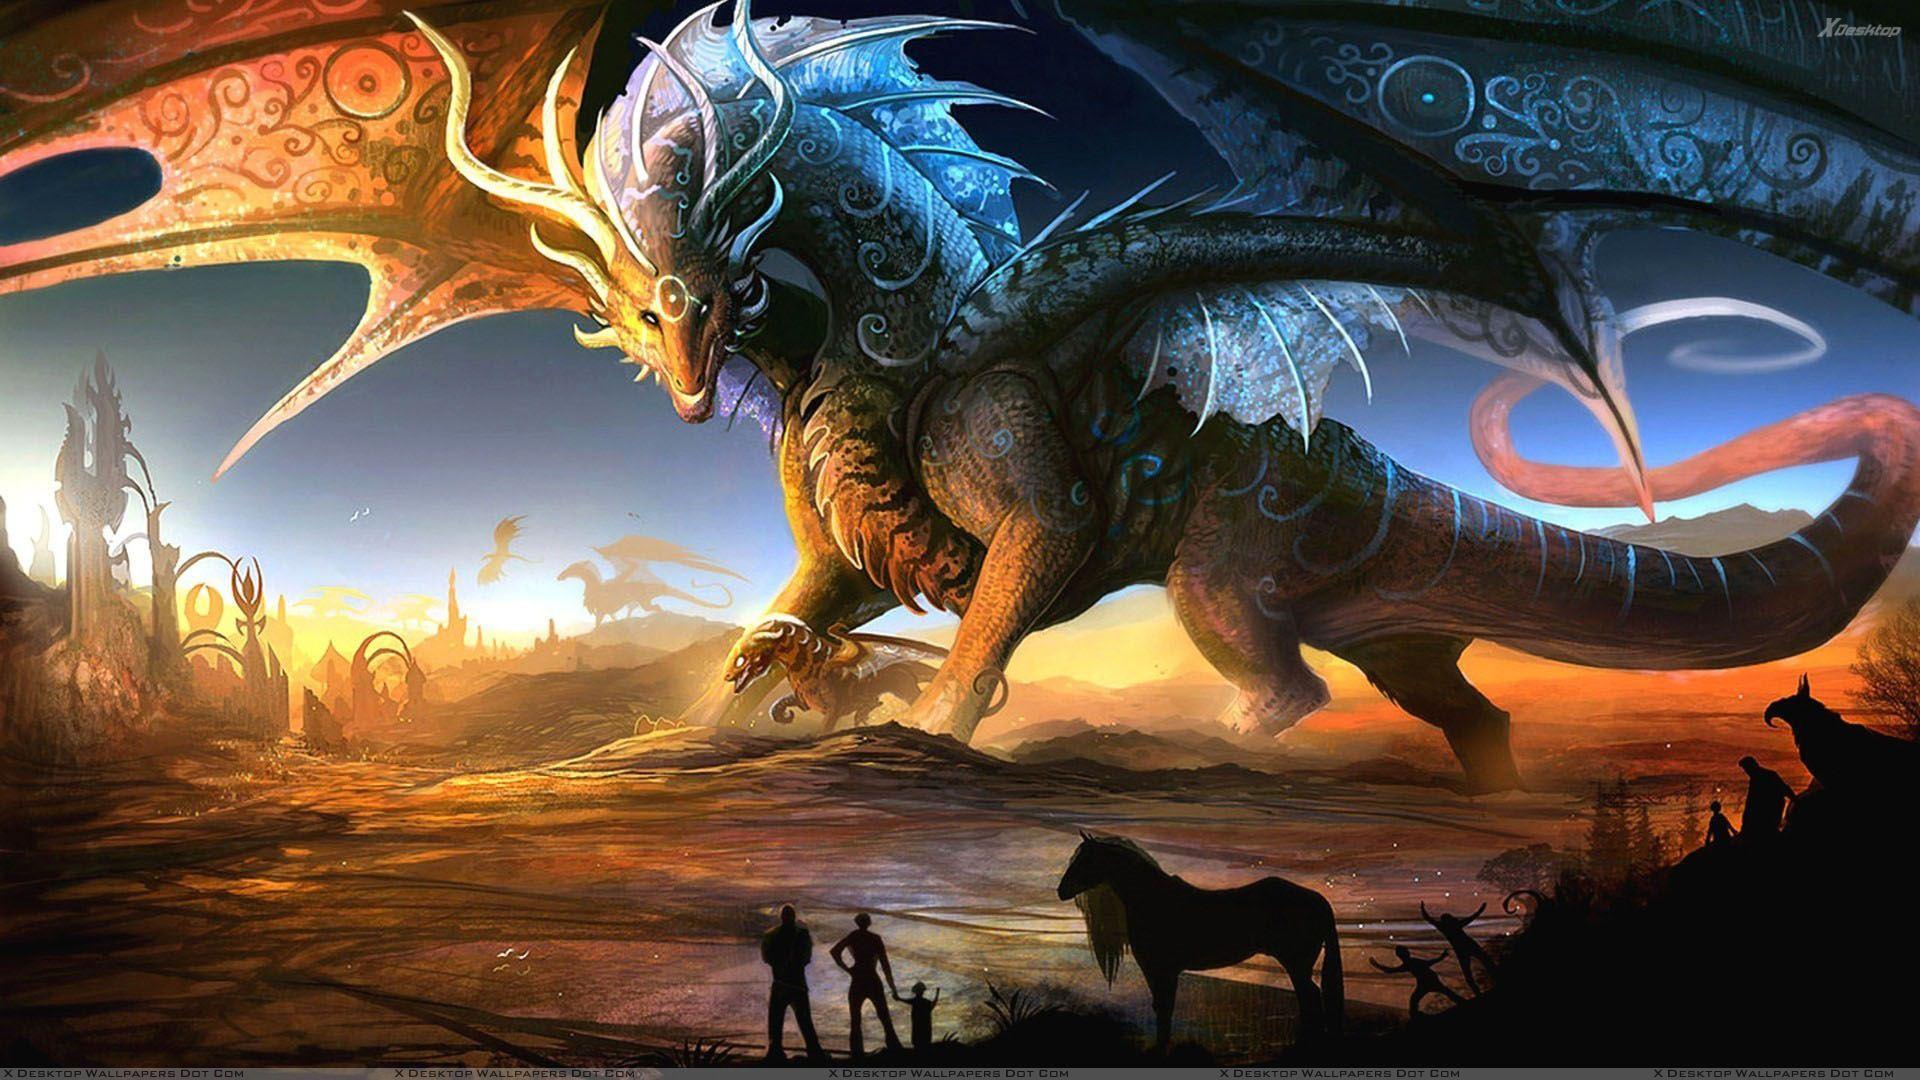 3D Dragon Fantasy Wallpaper & Picture